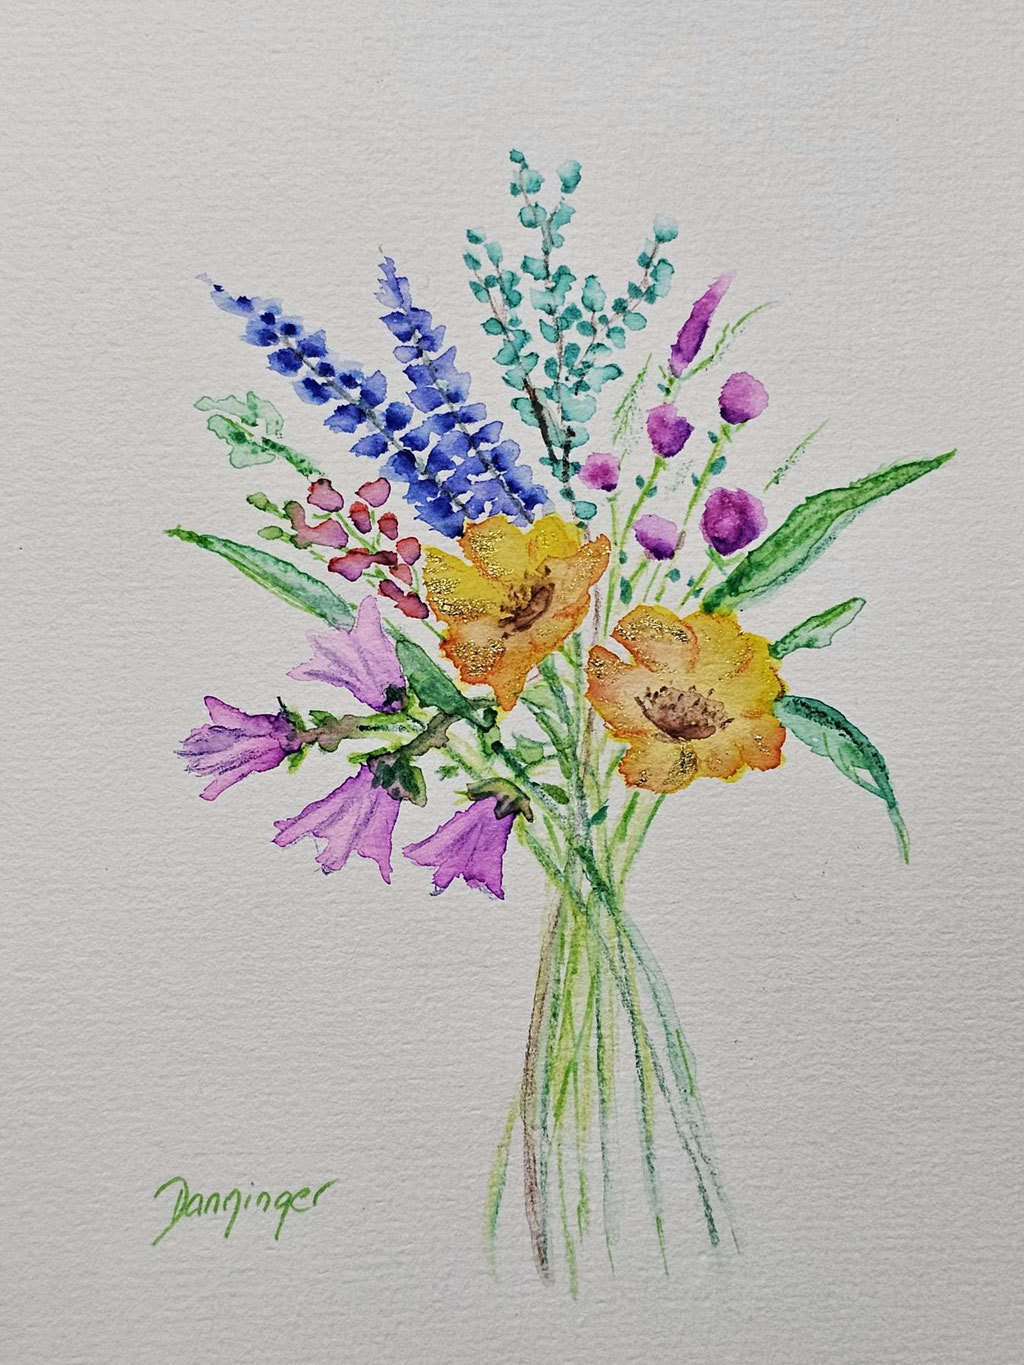 Muttertagskarte Aquarell "Bunter Blumenstrauß" für schöne Muttertagsgrüße